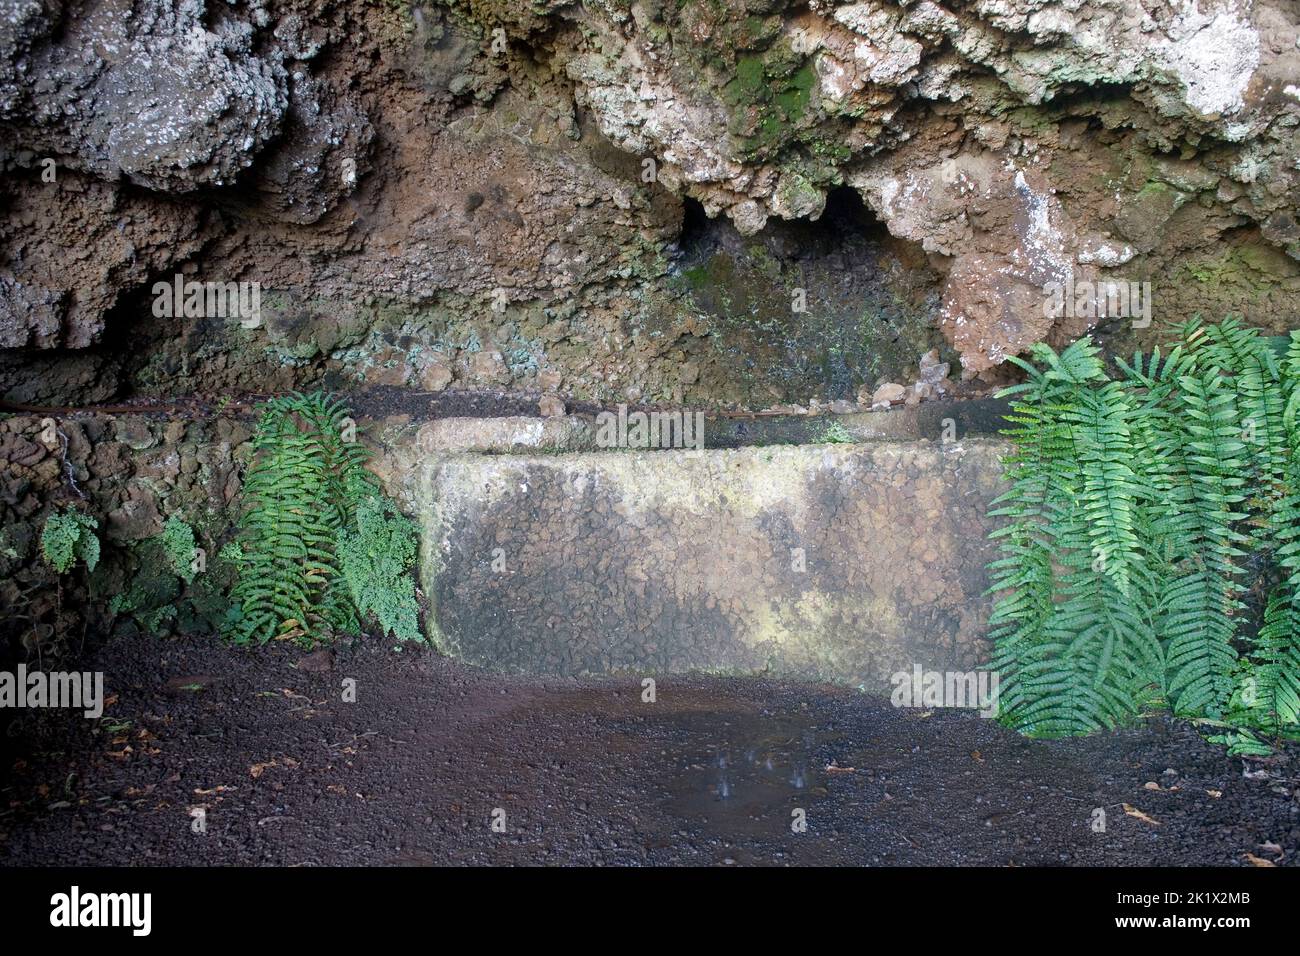 Grotte d'amant dans les jardins botaniques de Funchal Madère Banque D'Images